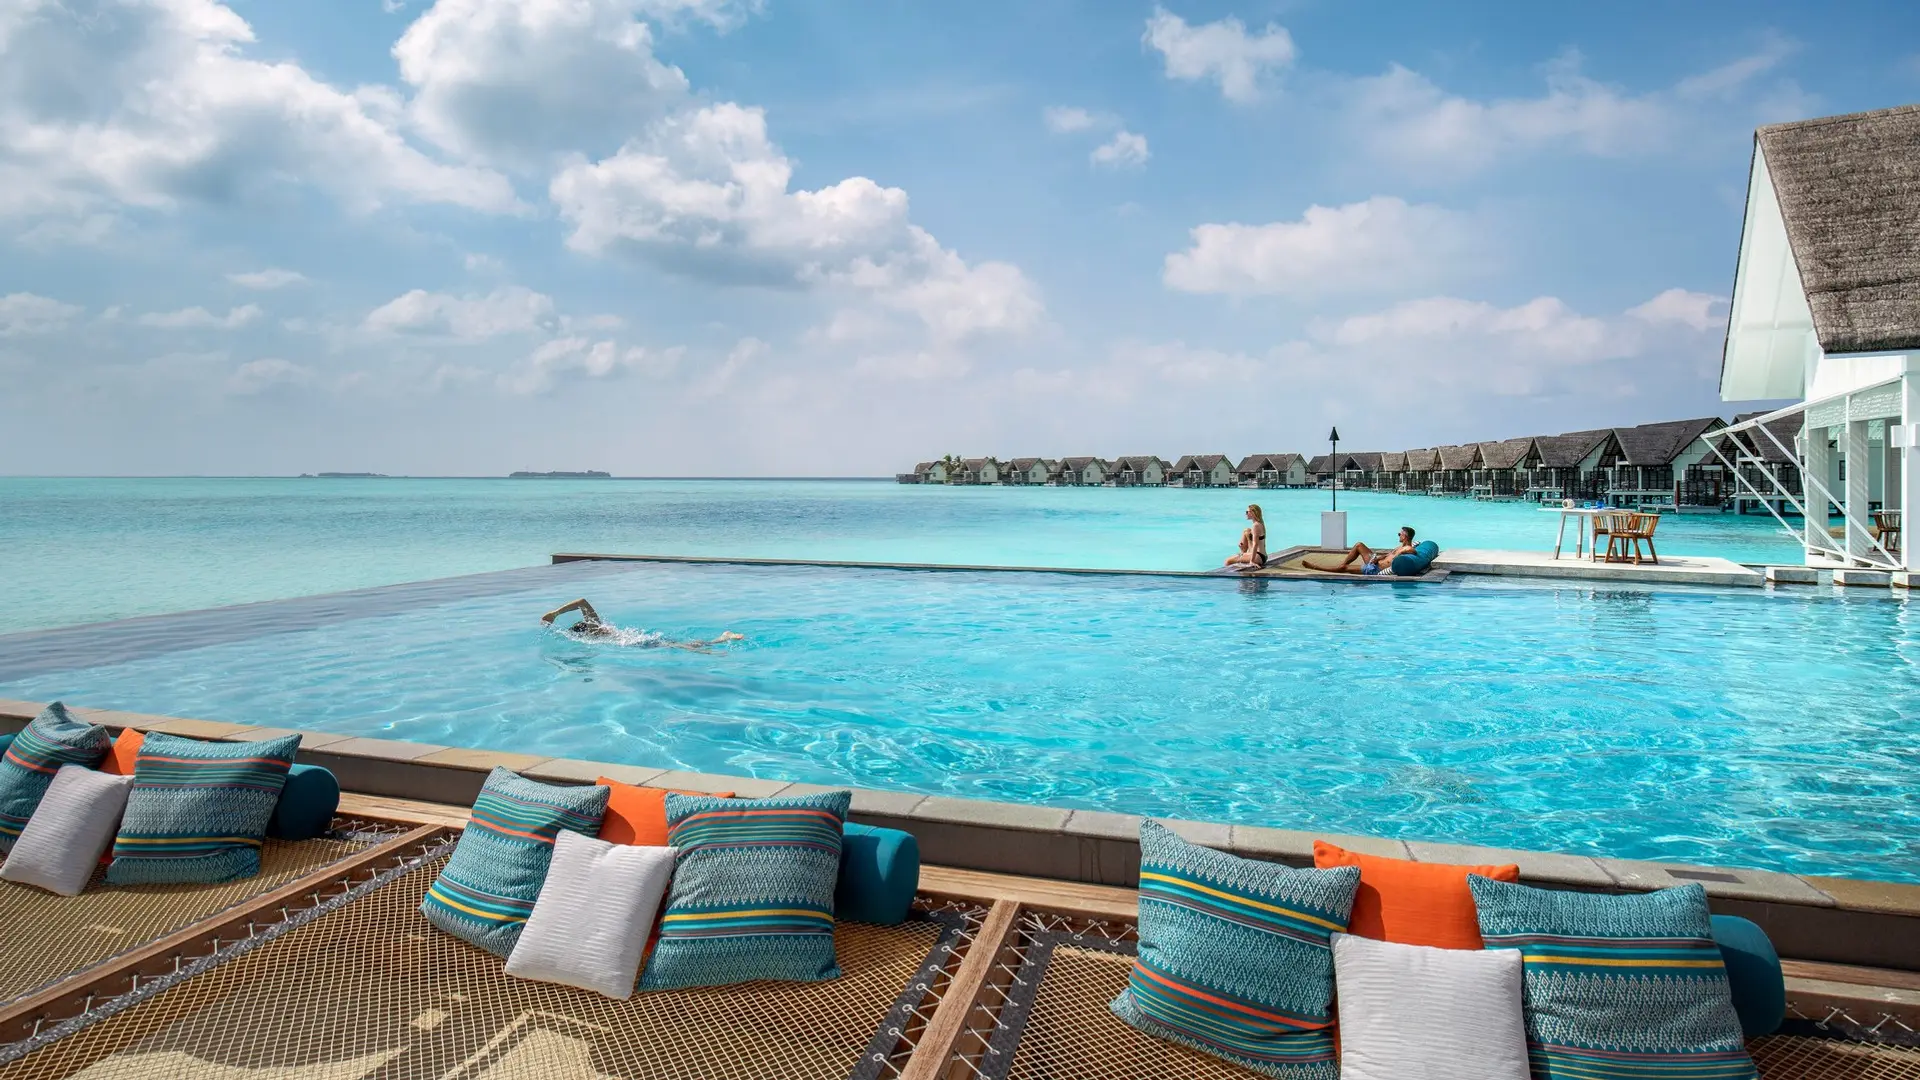 Hotel review Service & Facilities' - Four Seasons Resort Maldives at Landaa Giraavaru - 2